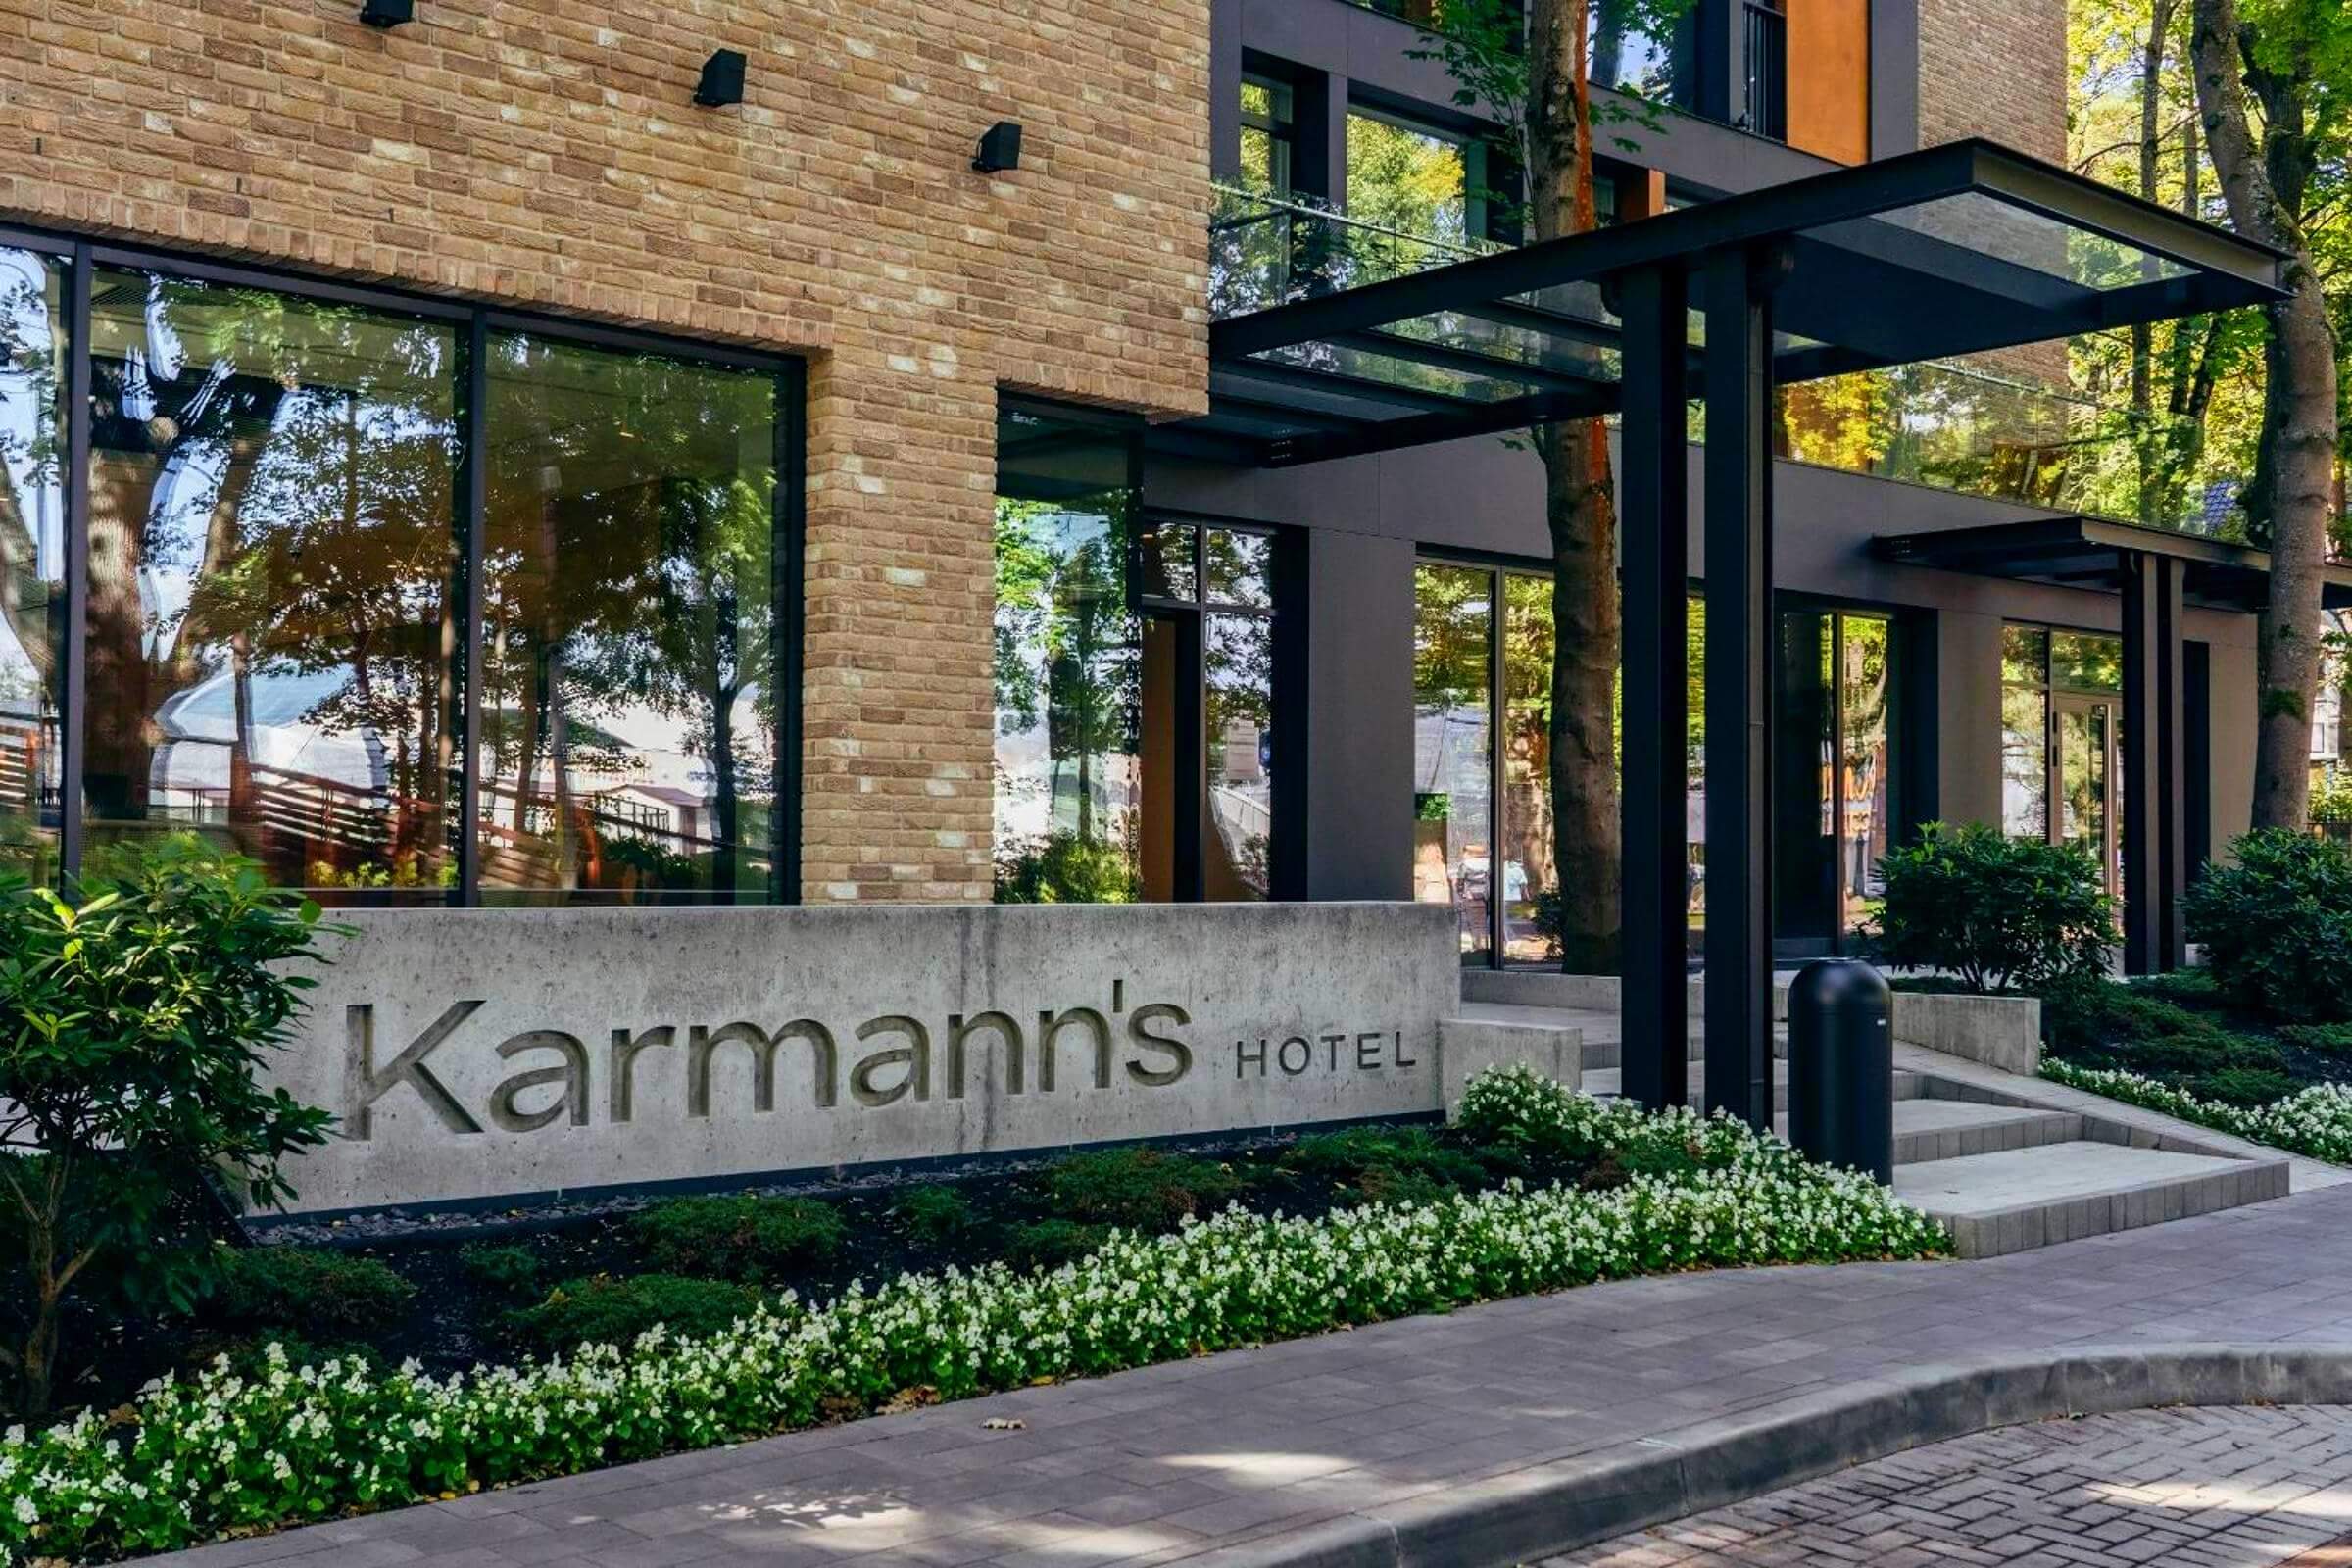 Karmann’s Hotel – Yantar Hall